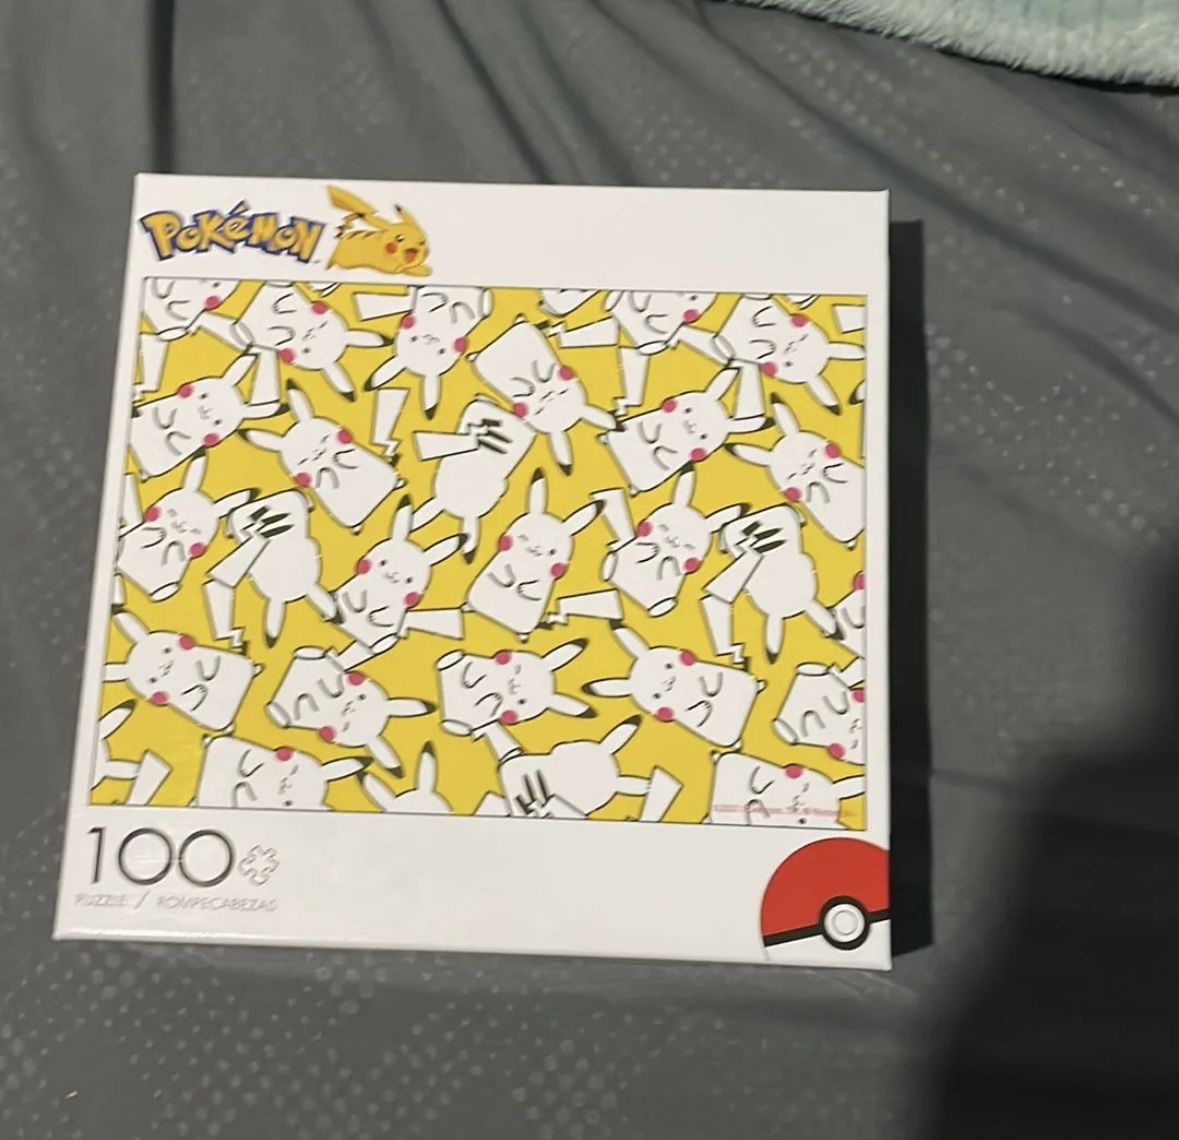 Pokémon Pikachu jigsaw Puzzle